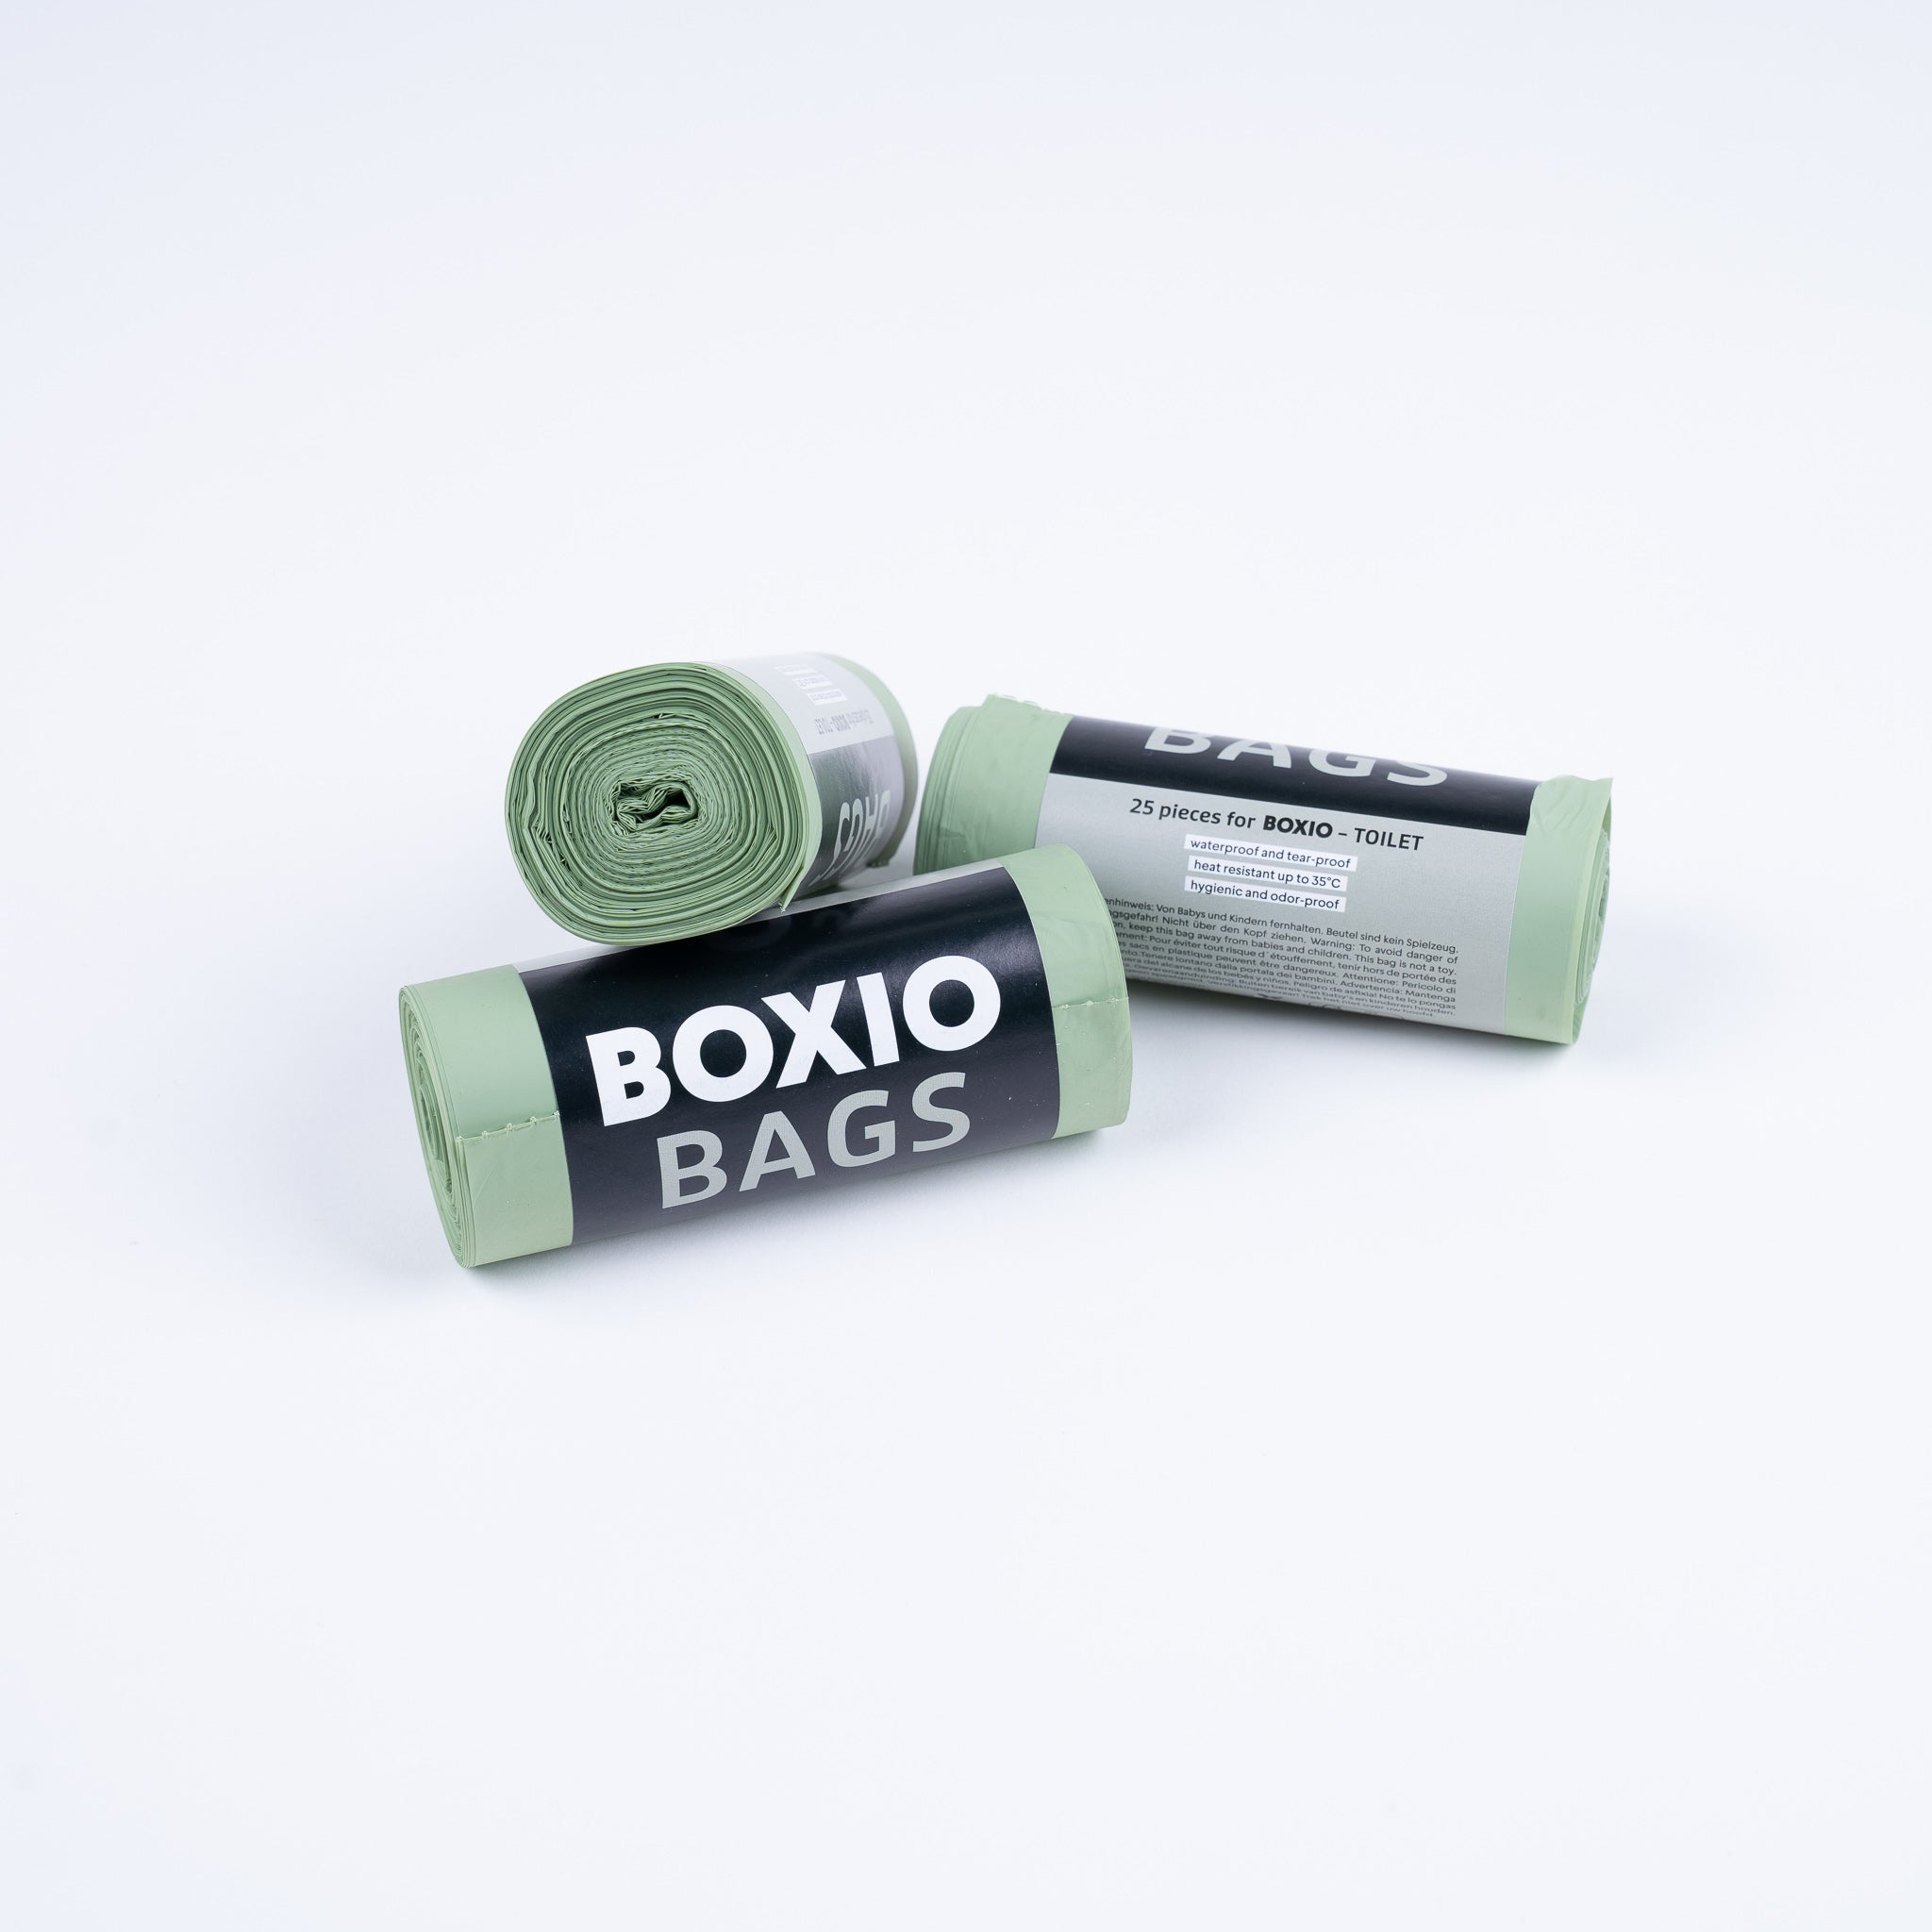 BOXIO - SANITARY : Kit complet avec toilette de séparation, lavabo mobile et accessoires